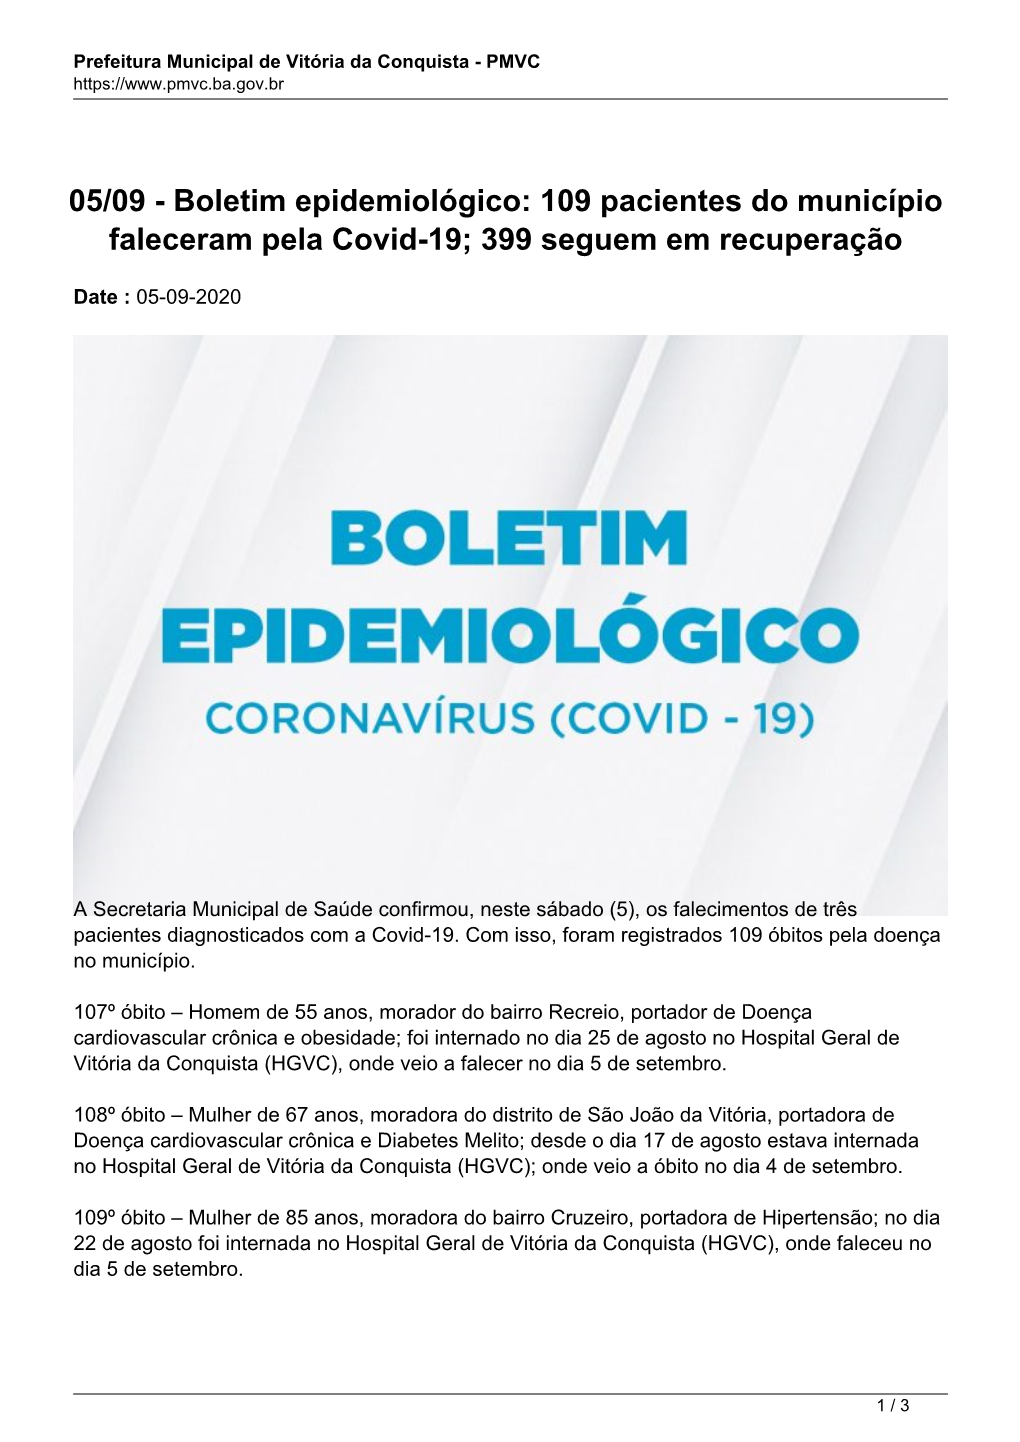 Boletim Epidemiológico: 109 Pacientes Do Município Faleceram Pela Covid-19; 399 Seguem Em Recuperação